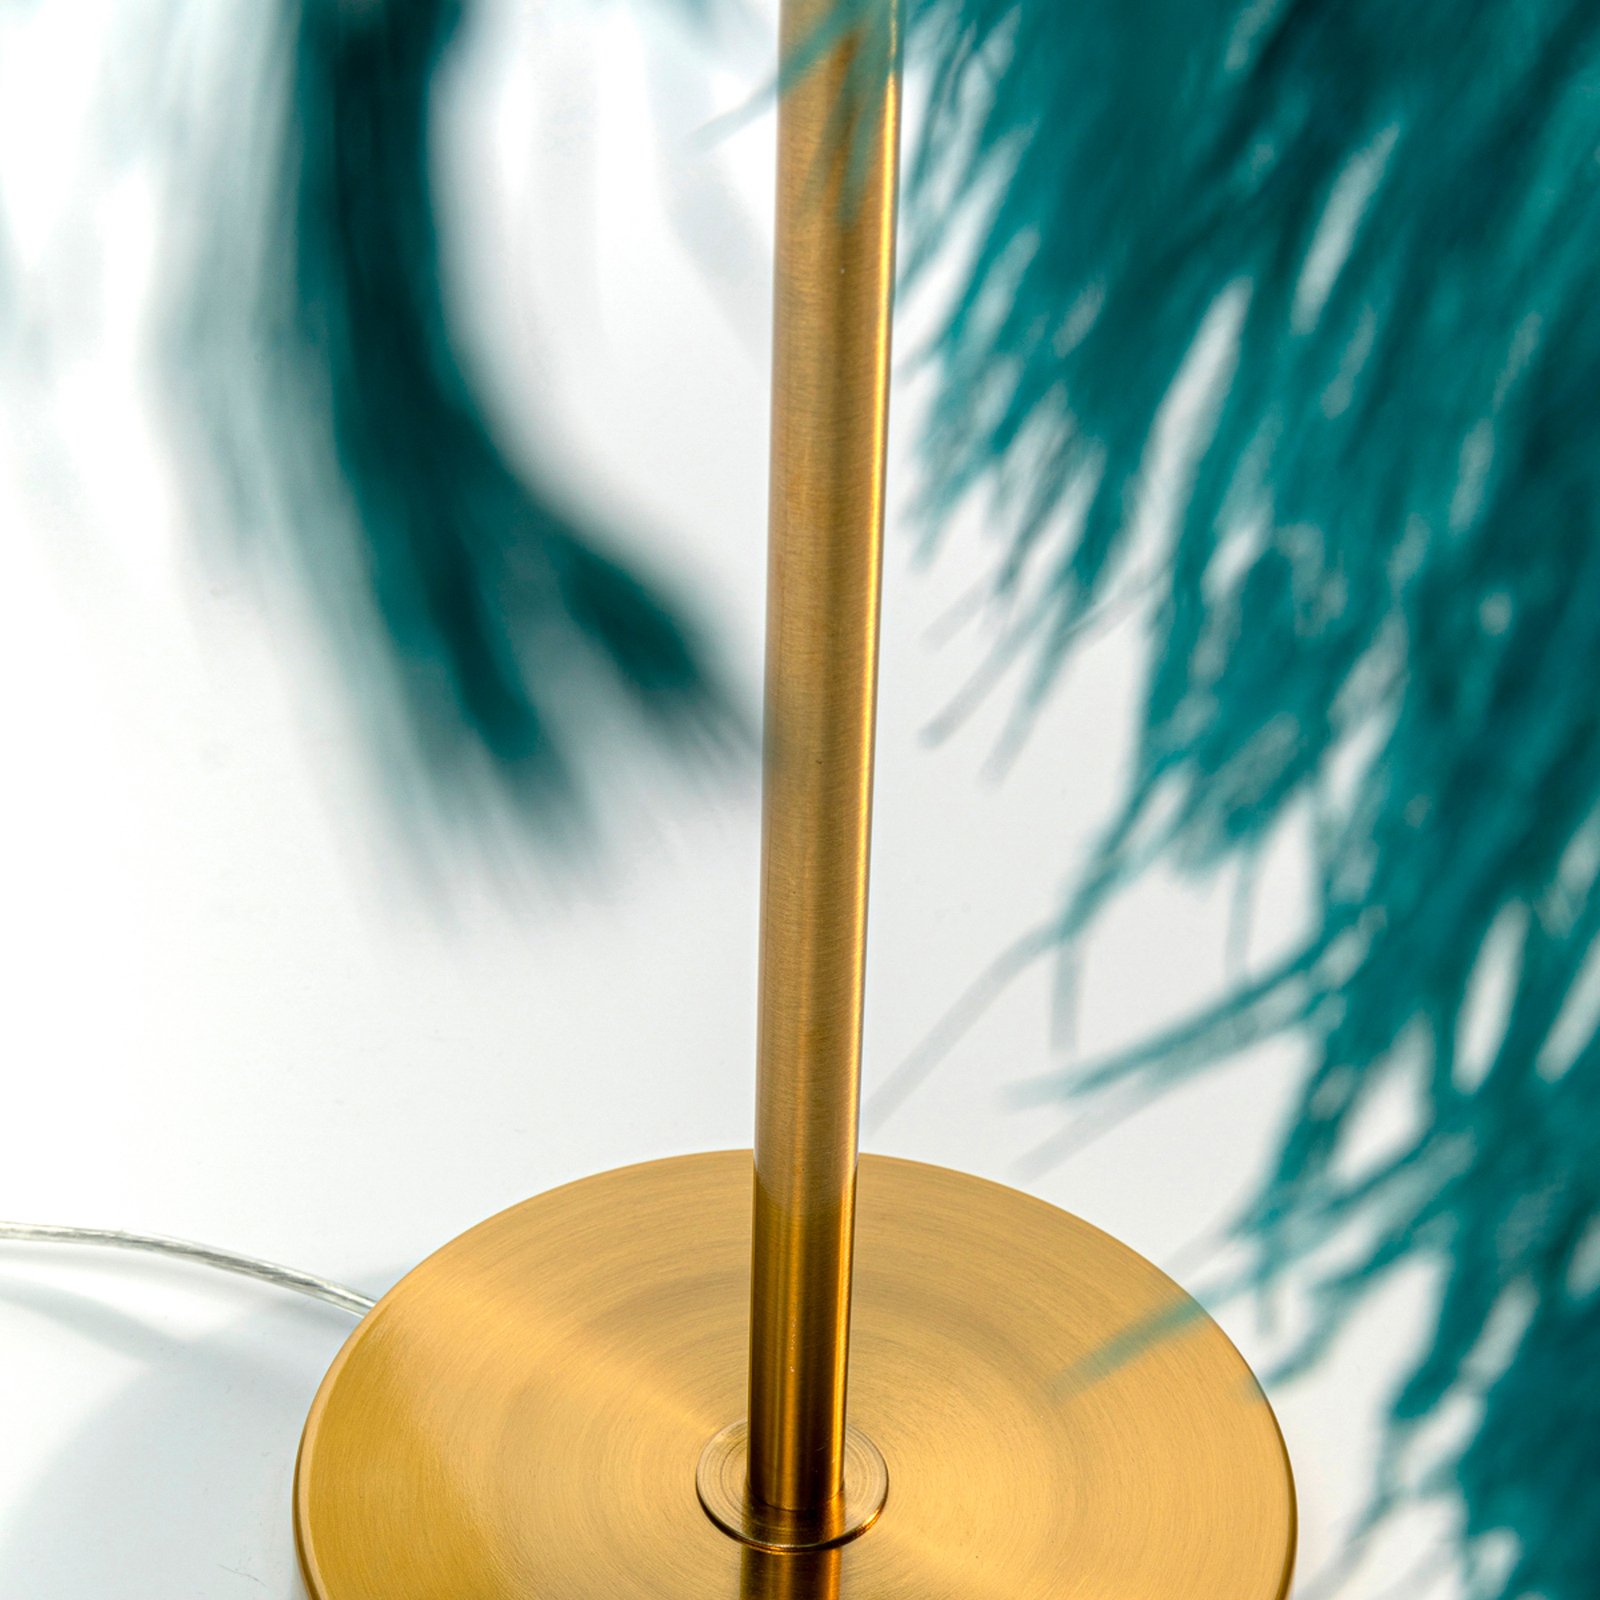 KARE Feather Palm bordlampe med fjær, grønn